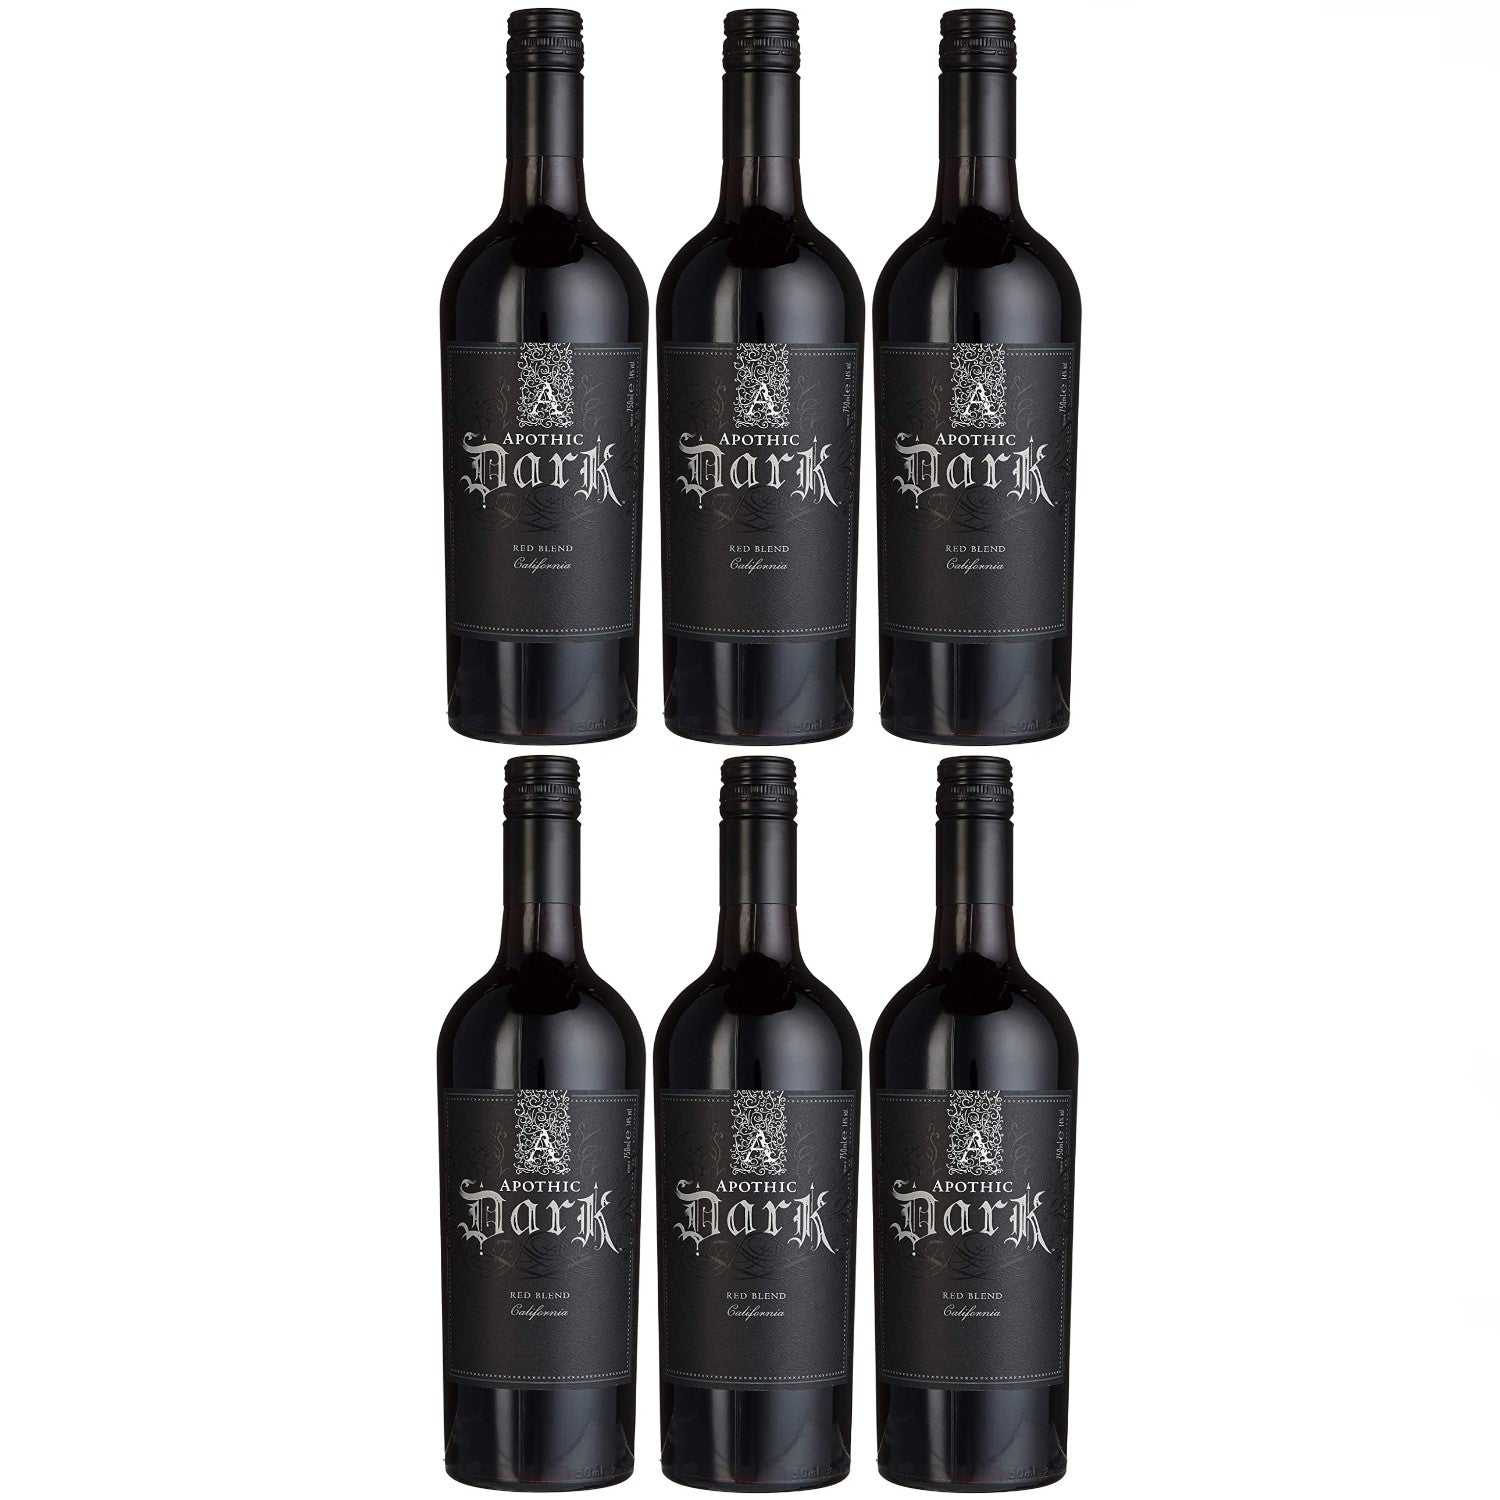 Apothic Dark Rotwein Cuvée Wein trocken Kalifornien (6 x 0.75l) – Versanel